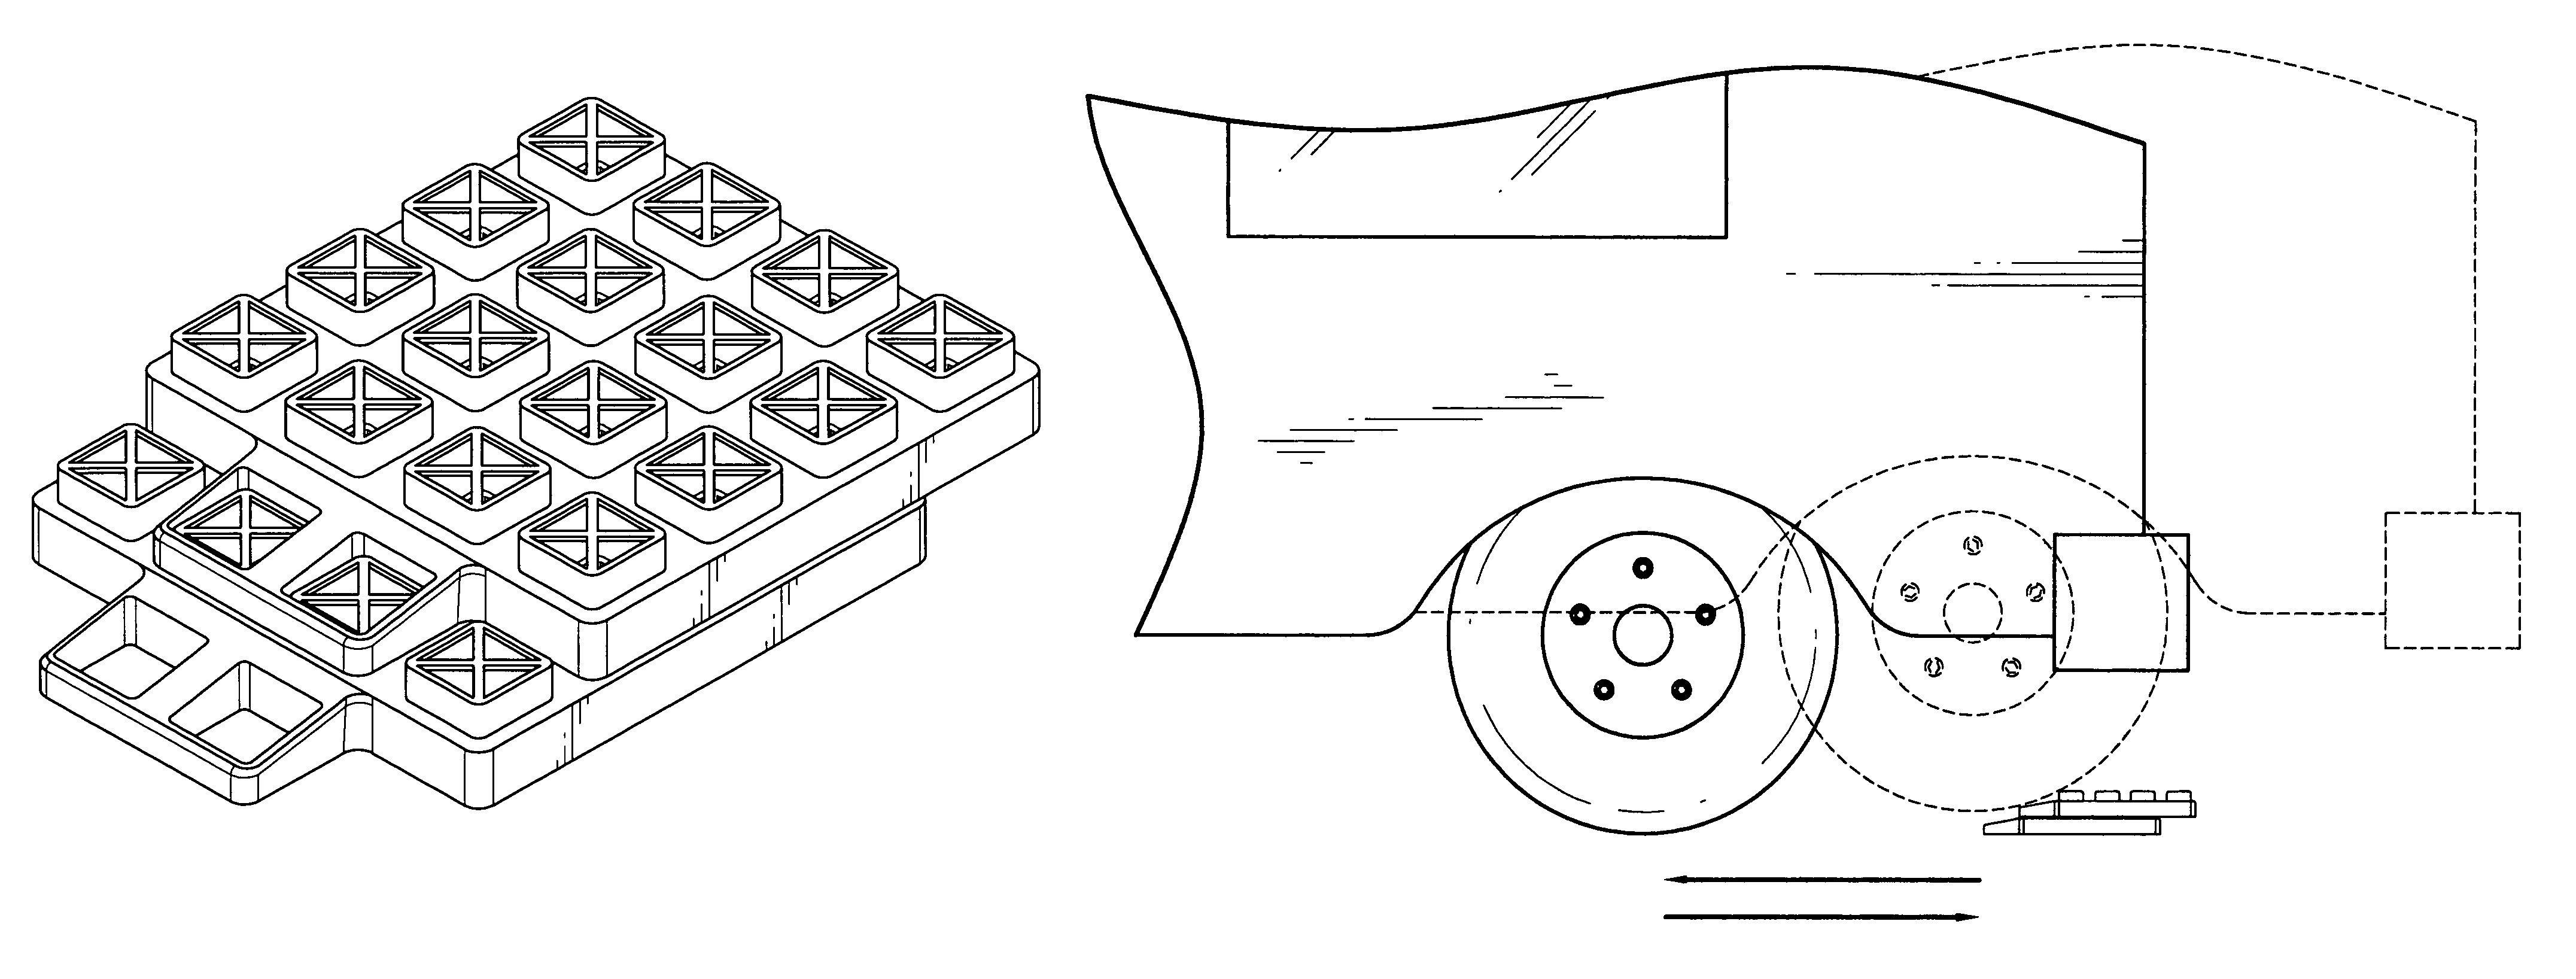 Vehicle leveling device